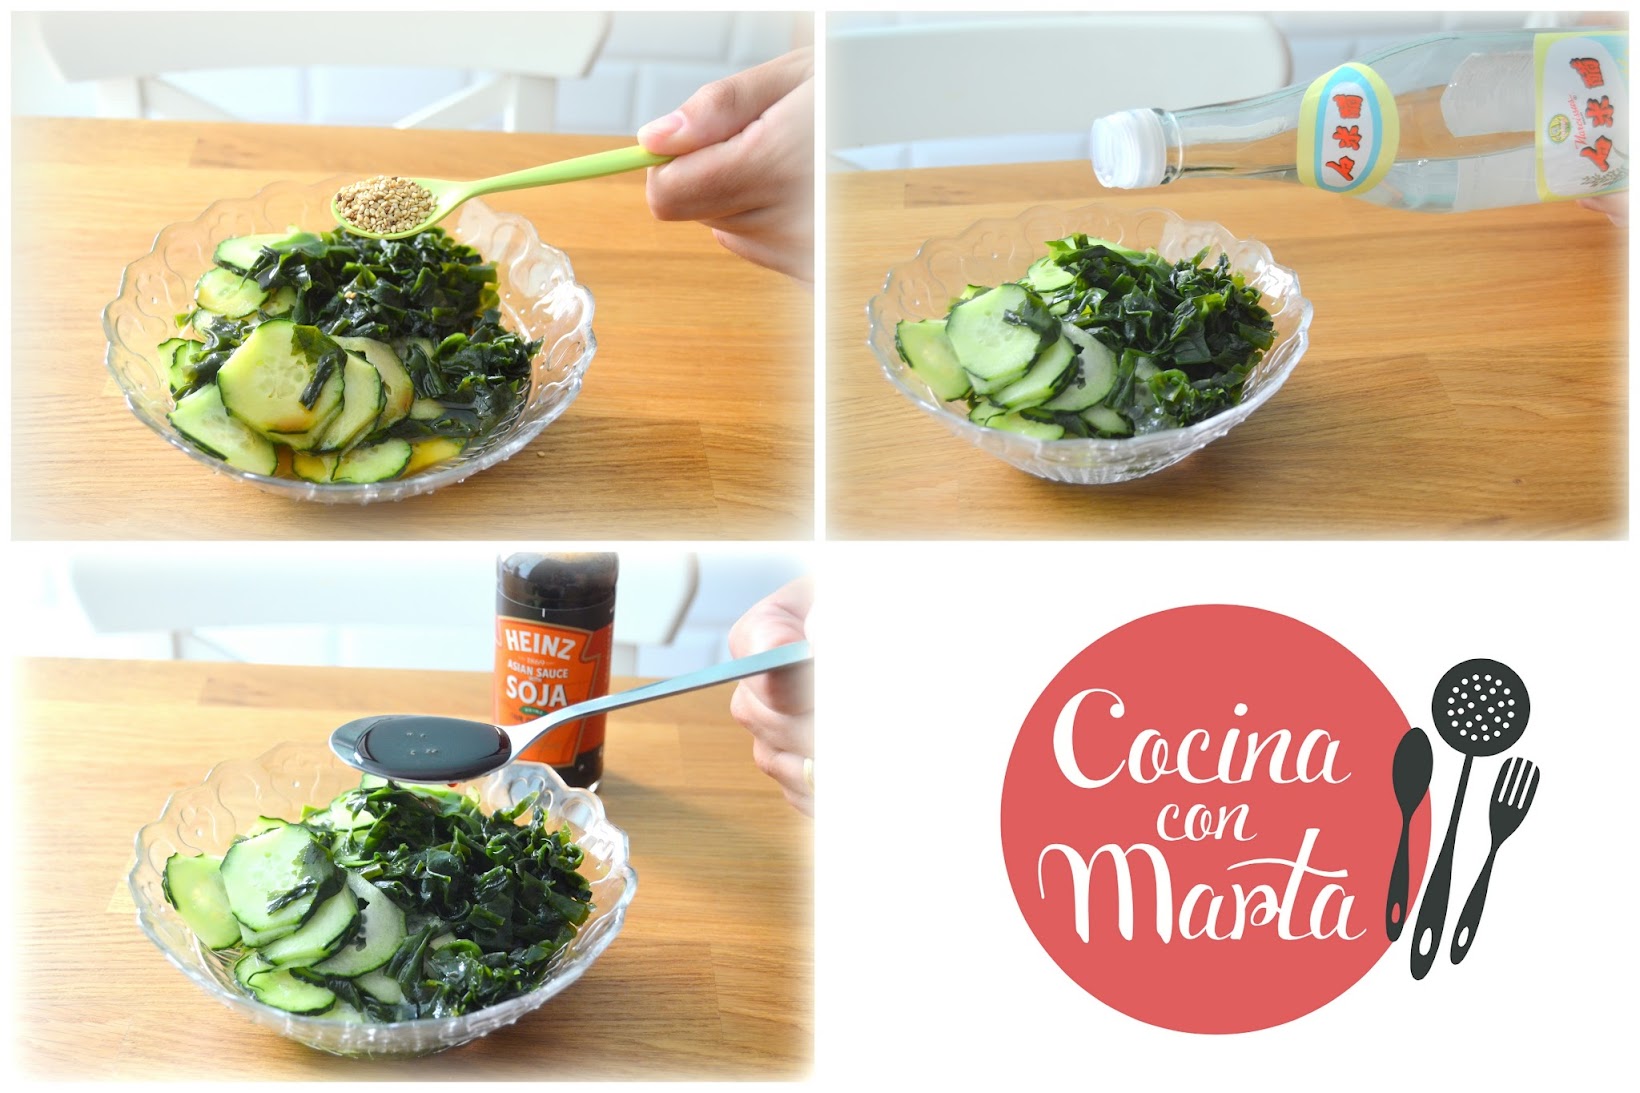 Ensalada Casera de pepino y algas wakame, receta japonesa. Fácil, sana, rápida. Cocina con Marta